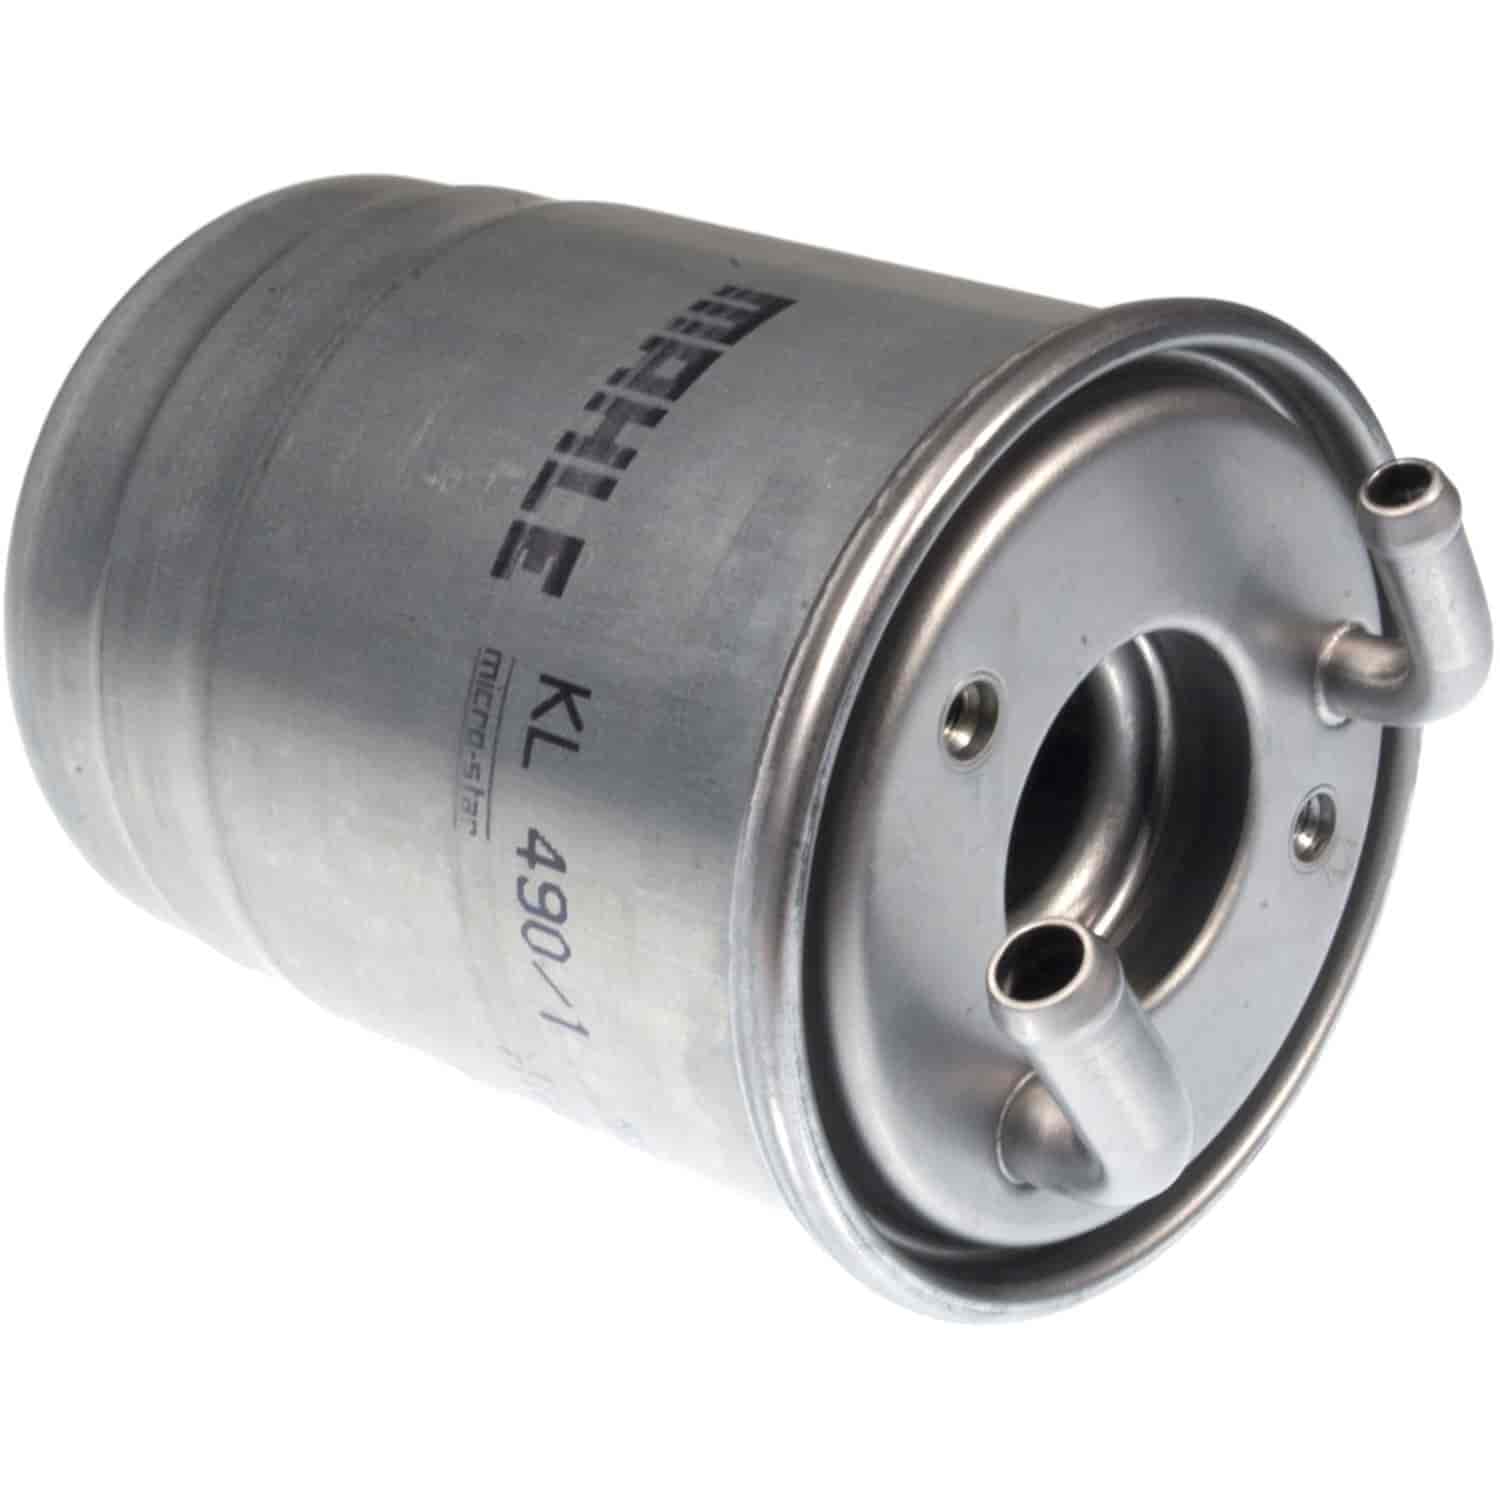 Mahle Fuel Filter Sprinter mit OM 651 4cyl.Diesel engine.3/09-. Sprinter mit OM 642